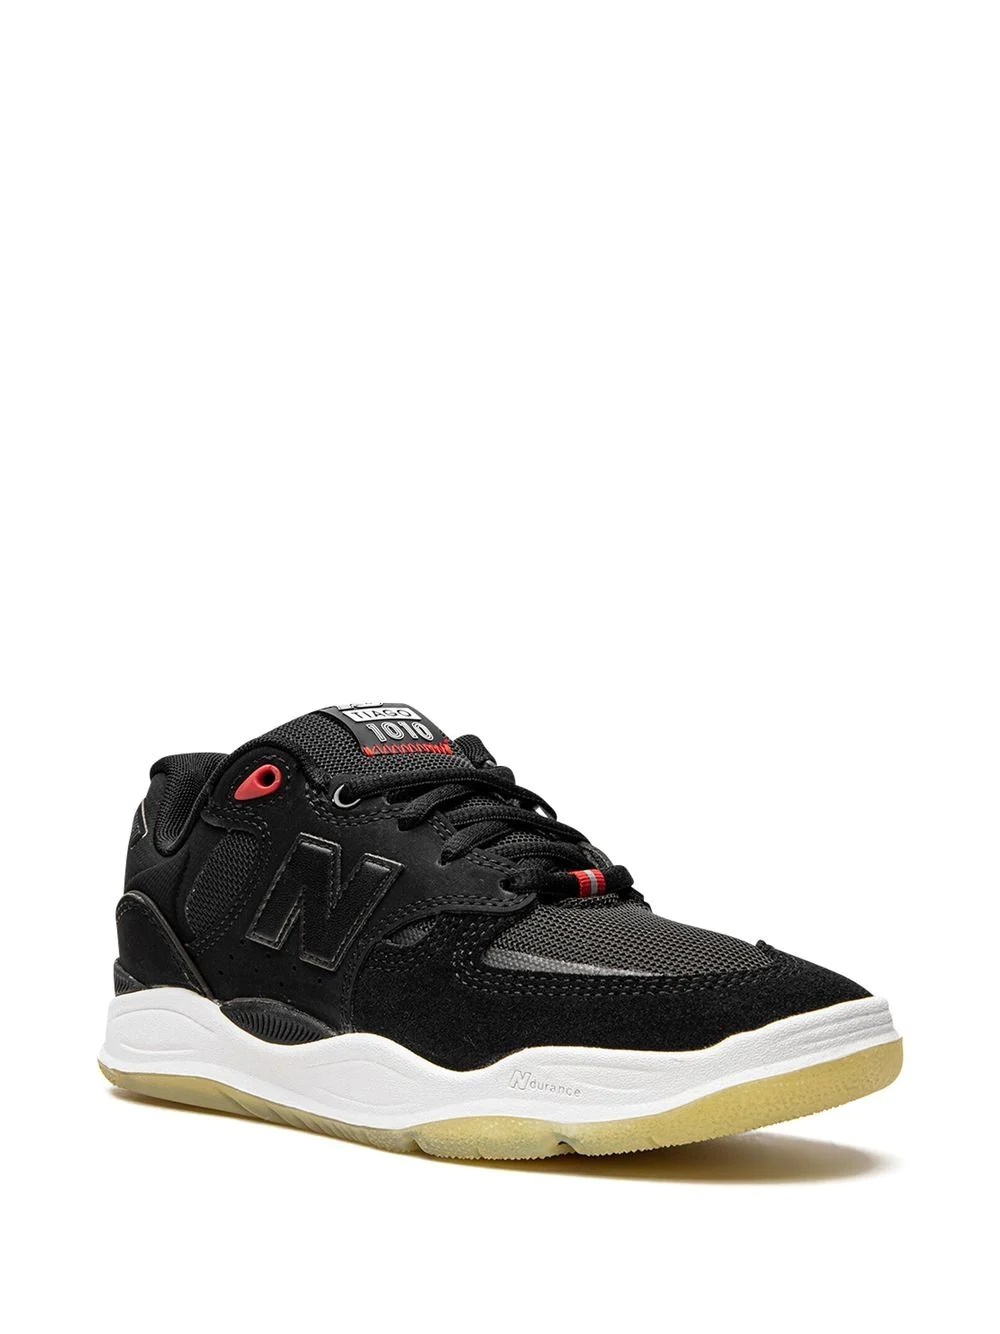 1010 "Black" sneakers - 2